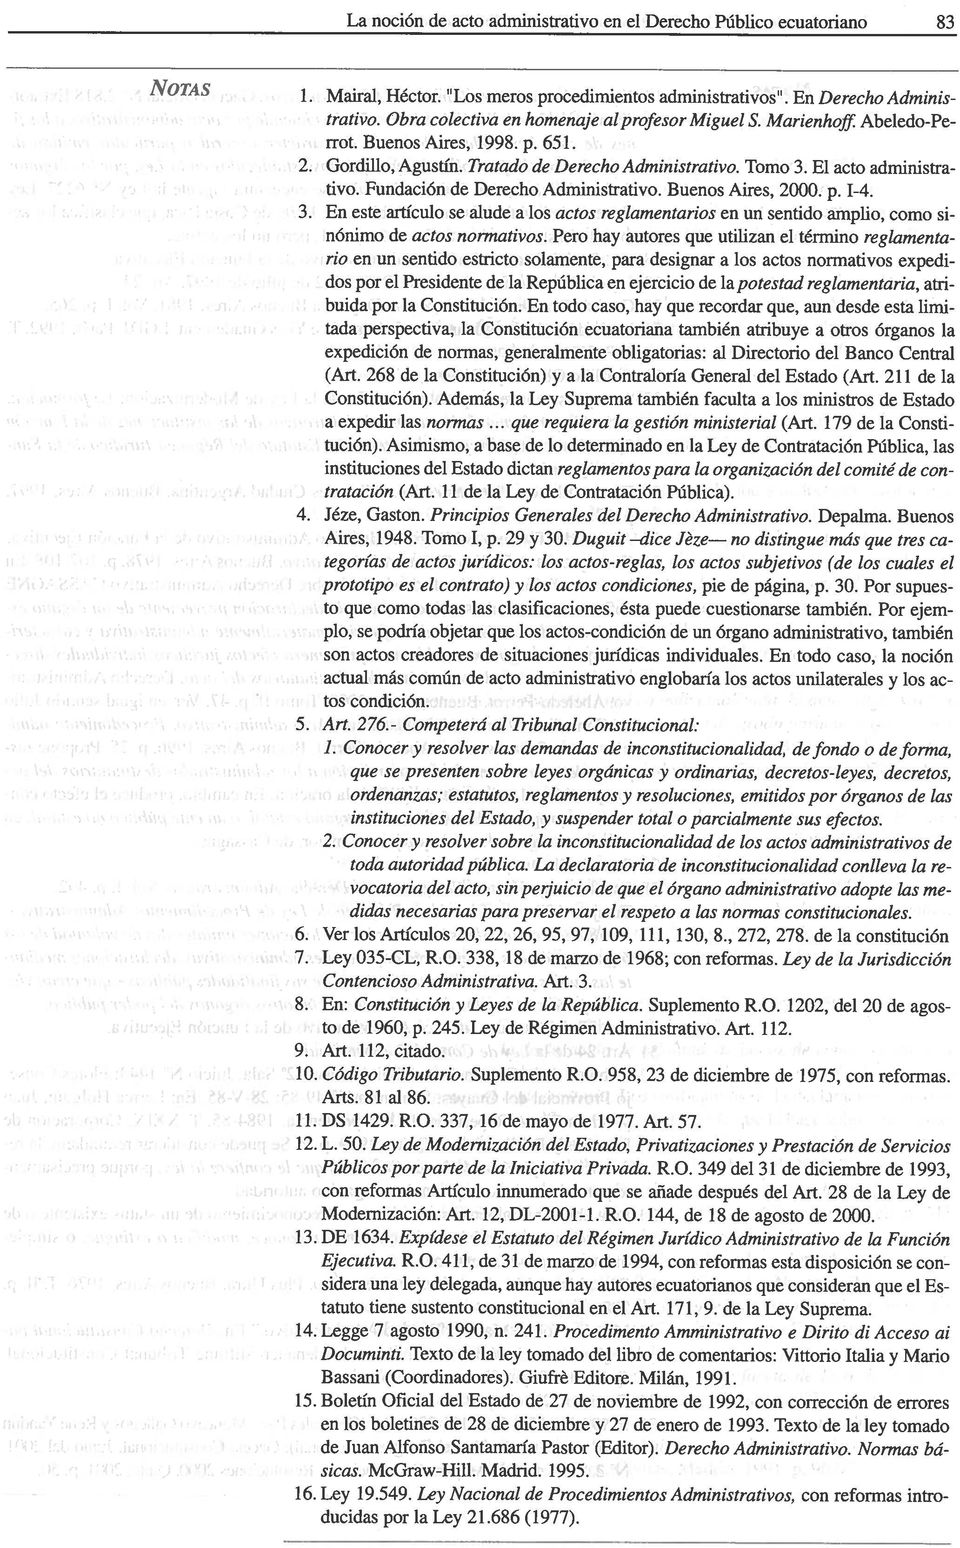 Fundación de Derecho Administrativo. Buenos Aires, 2000. p. 1-4. 3. En este artículo se alude a los actos reglamentarios en un sentido amplio, como si nónimo de actos normativos.